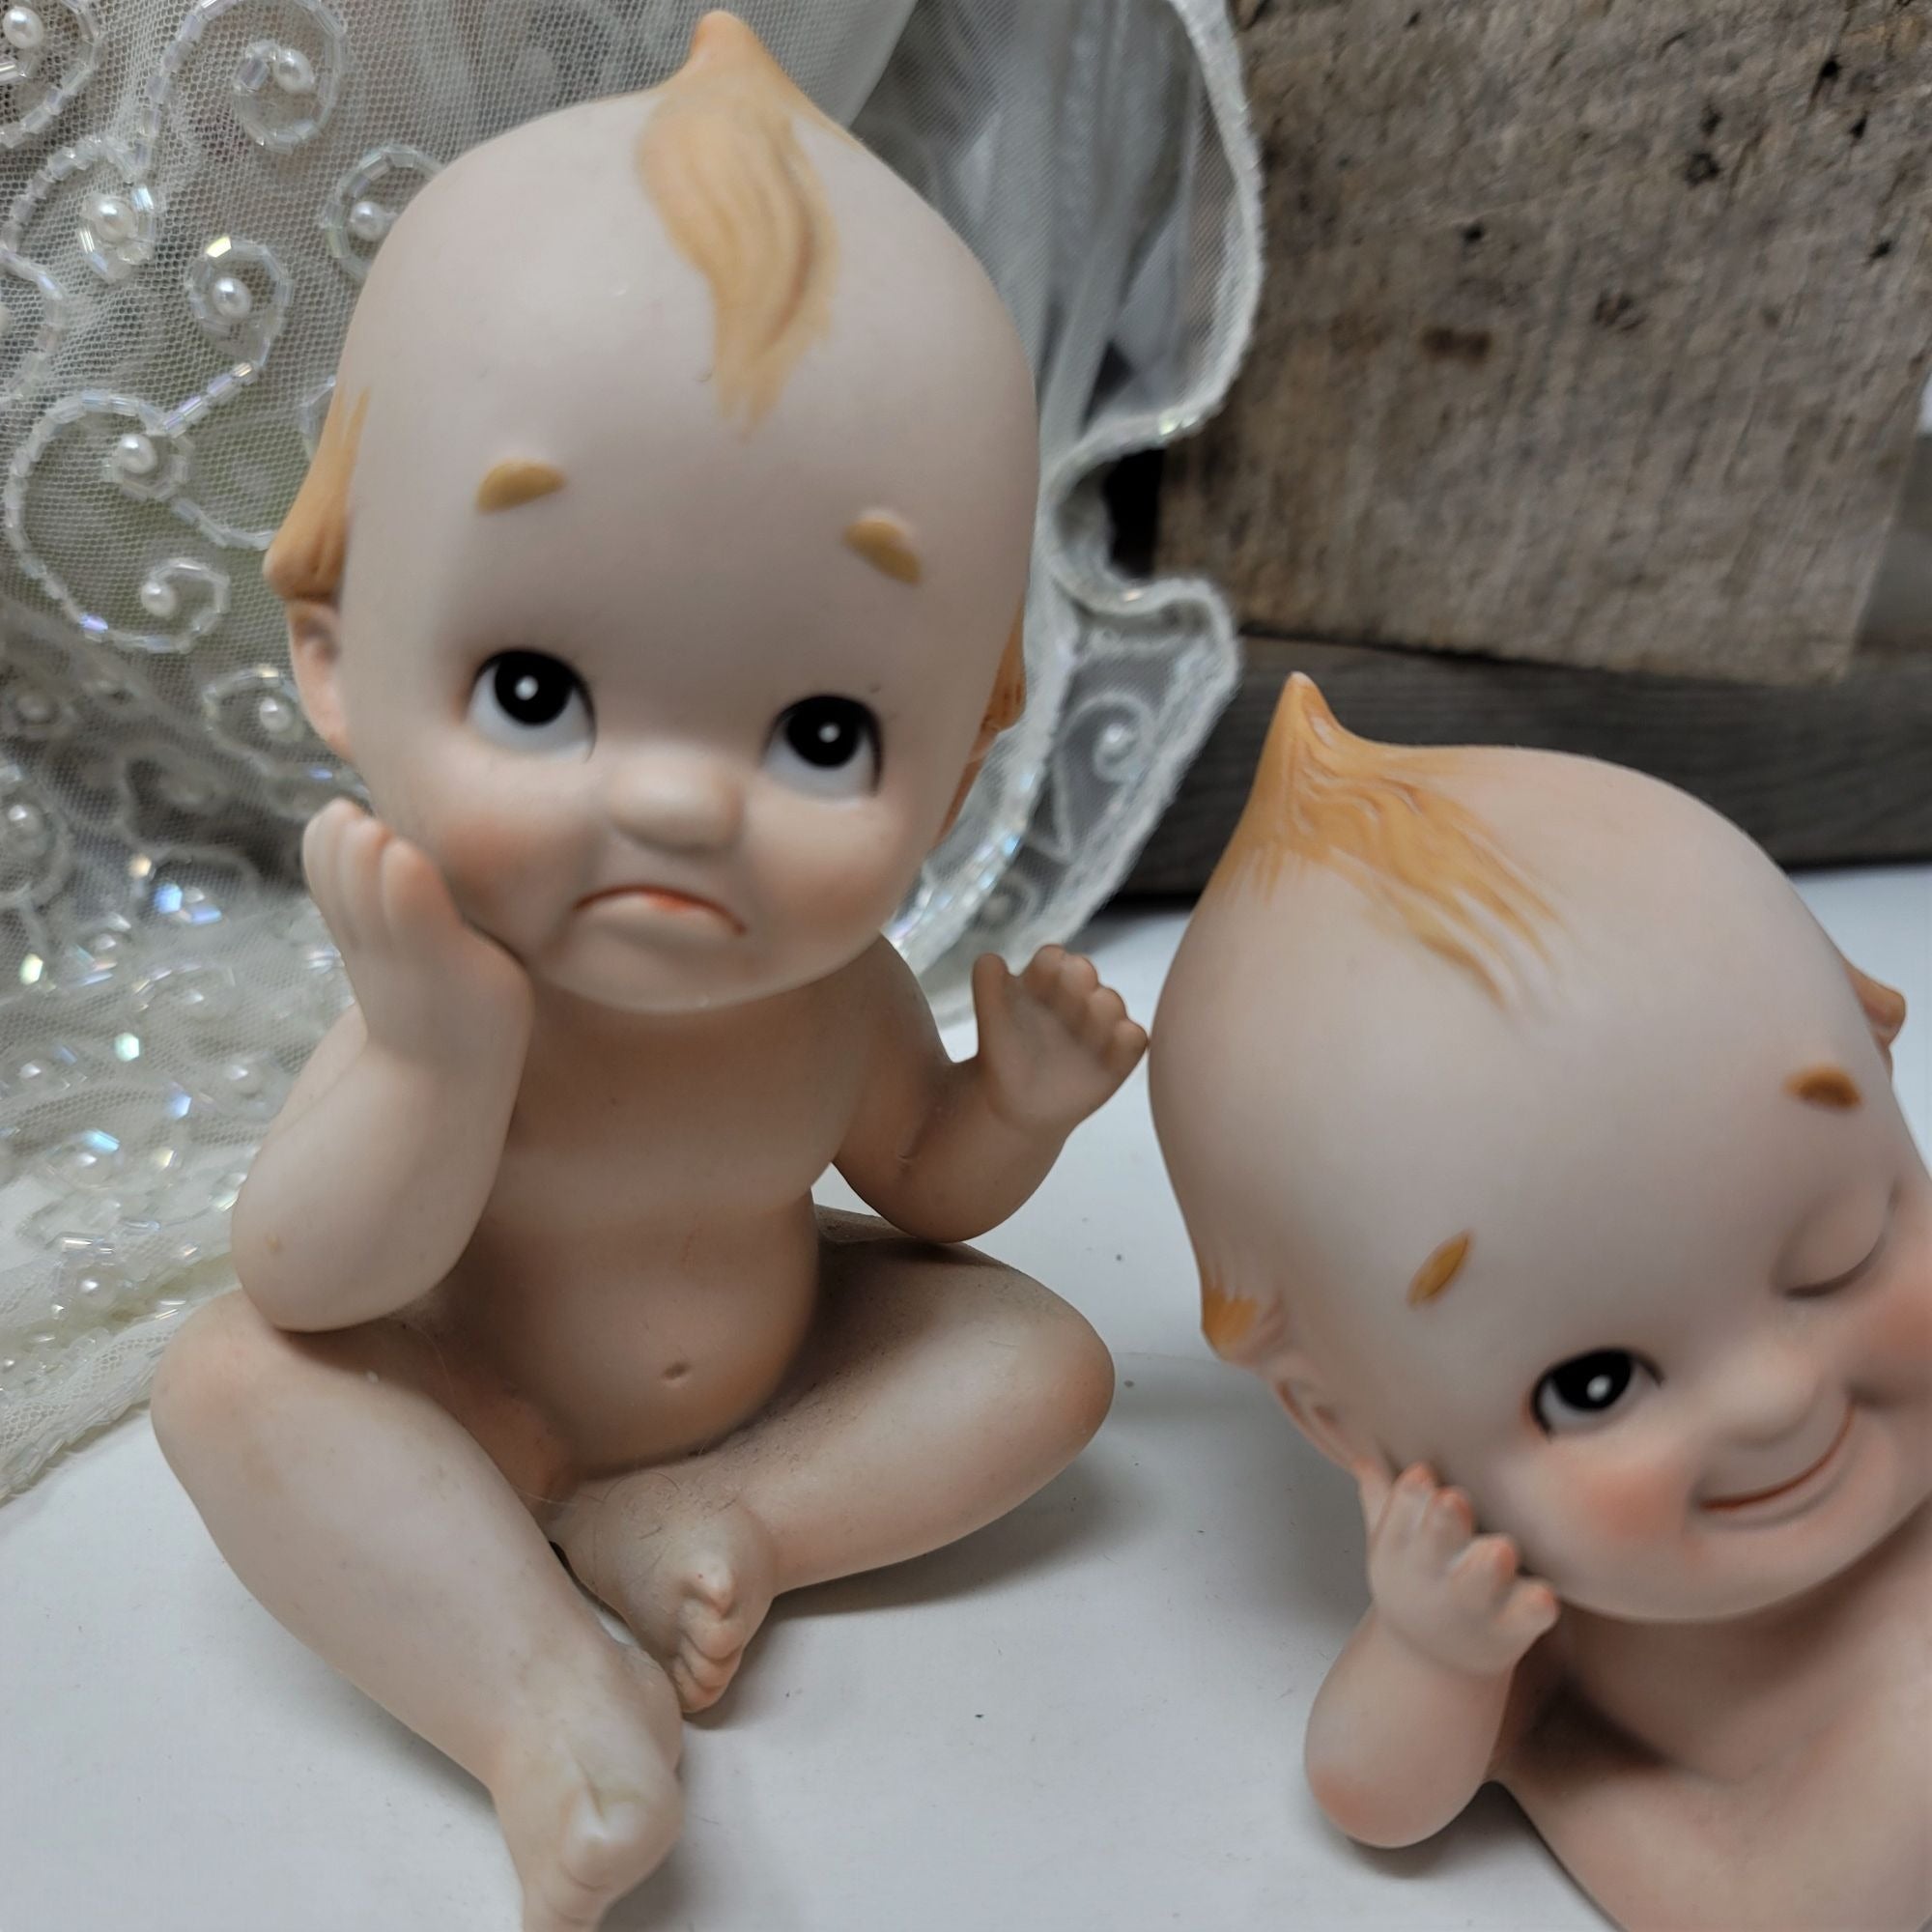 Vintage Lefton Babie Kewpie figurines Twins Winking